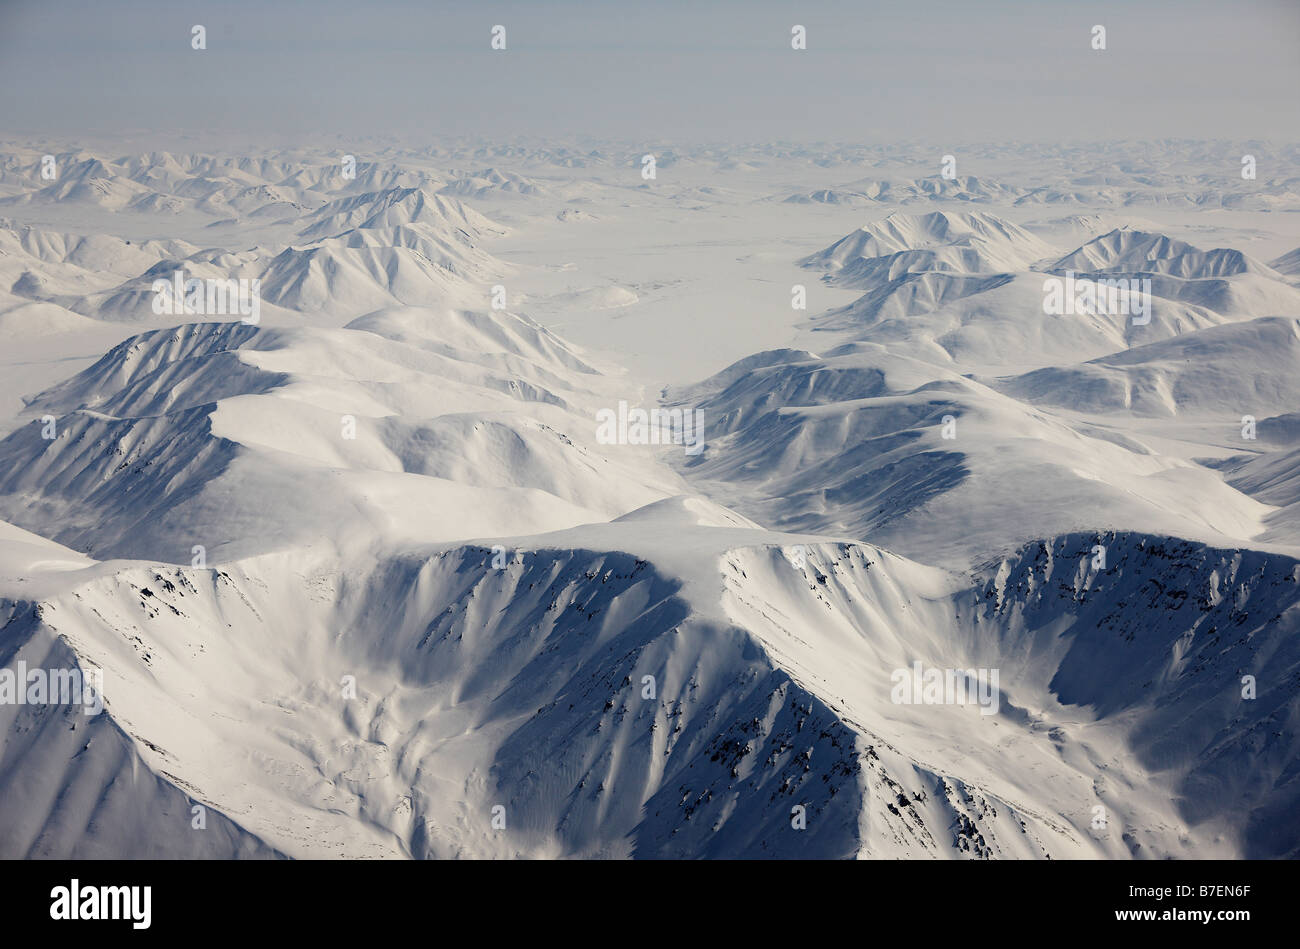 Vue aérienne de montagnes couvertes de neige, entre la Sibérie Tchoukotka Anadyr et Egvekinot, Russie Banque D'Images